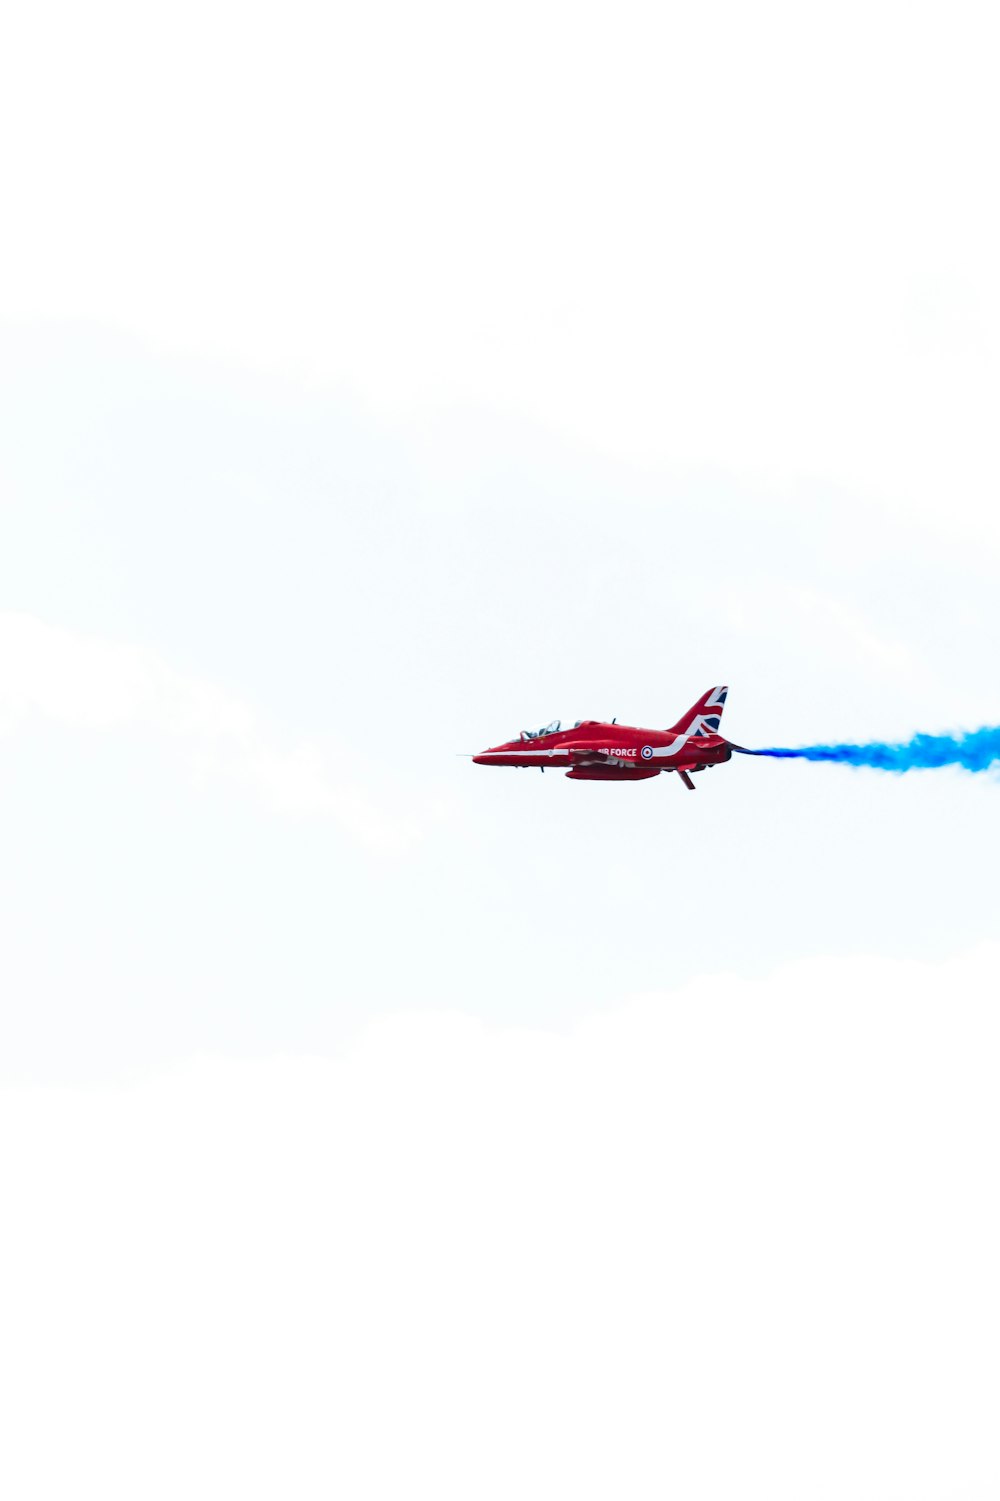 Ein rotes Flugzeug mit blauem Rauch